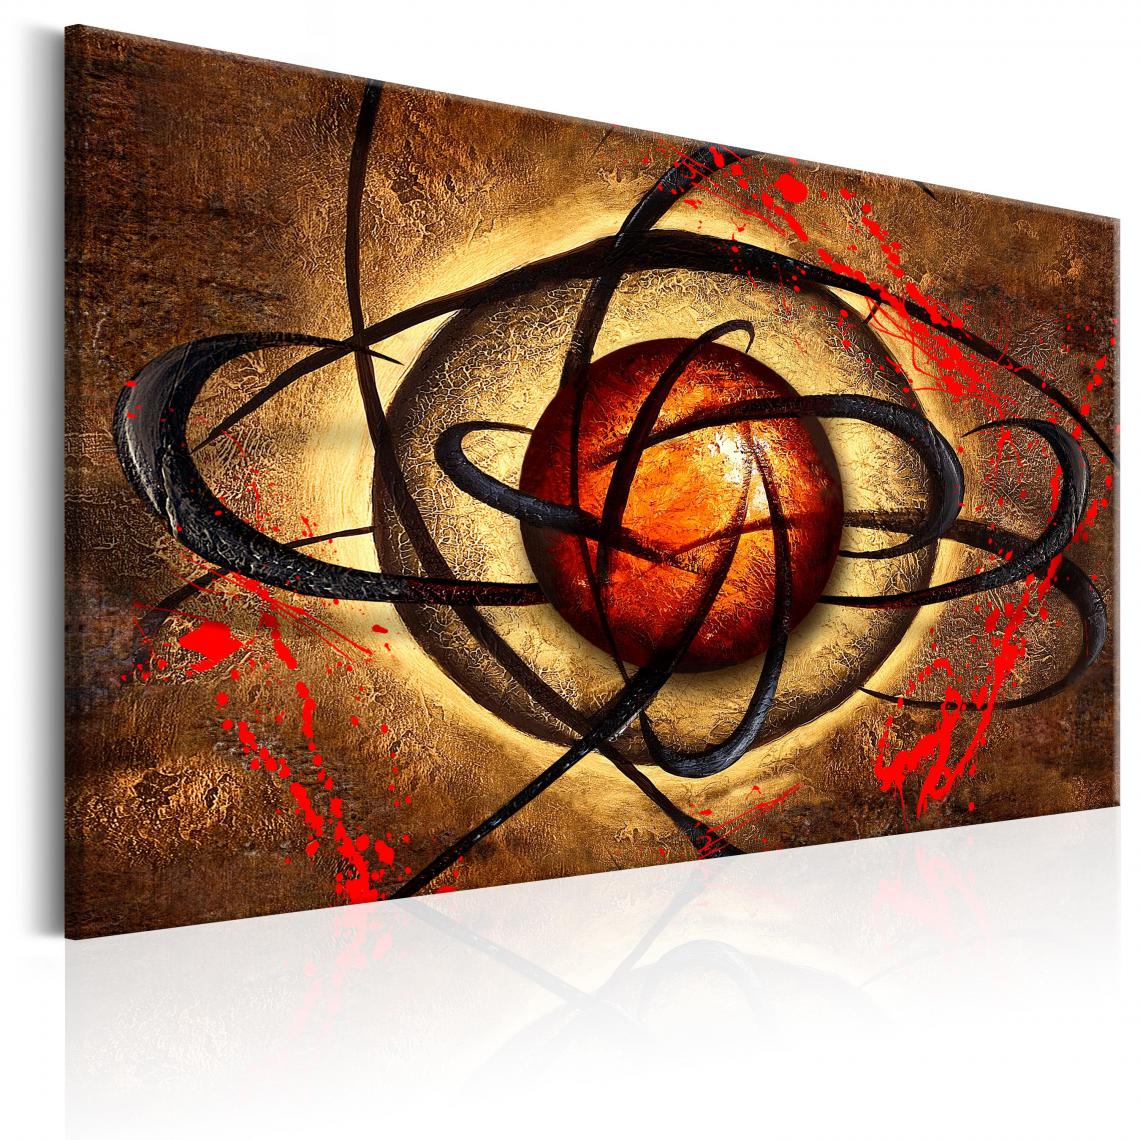 Decoshop26 - Tableau sur toile décoration murale image imprimée cadre en bois à suspendre Oeil Secret 120x80 cm 11_0001372 - Tableaux, peintures